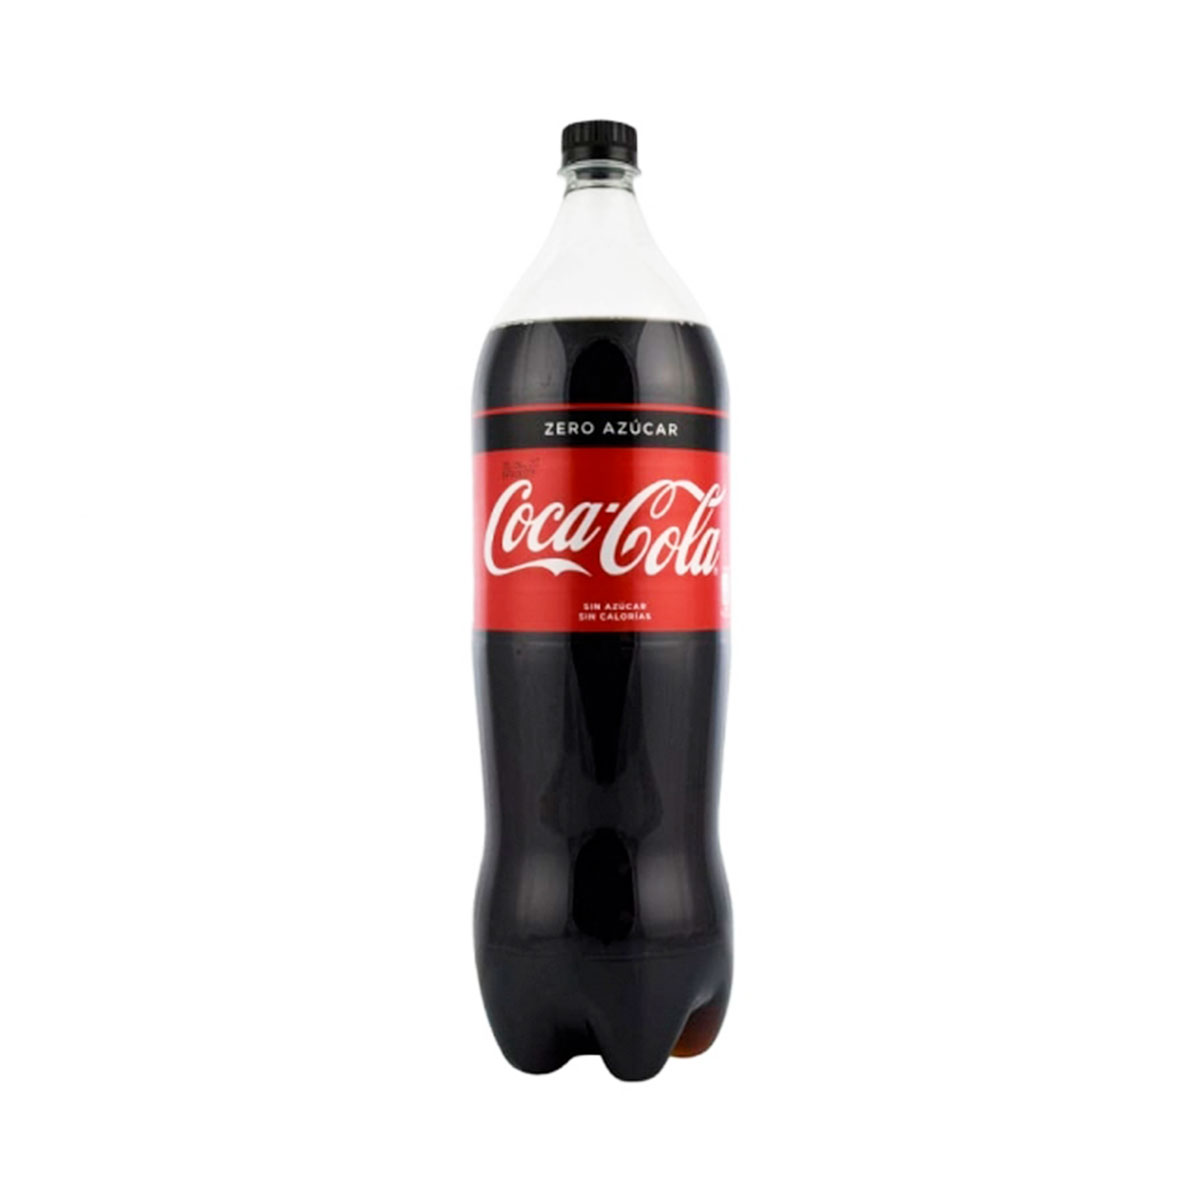 Coca-Cola Zero: 10 años en España equivalen al 28% de las ventas  #YoLeoReasonWhy